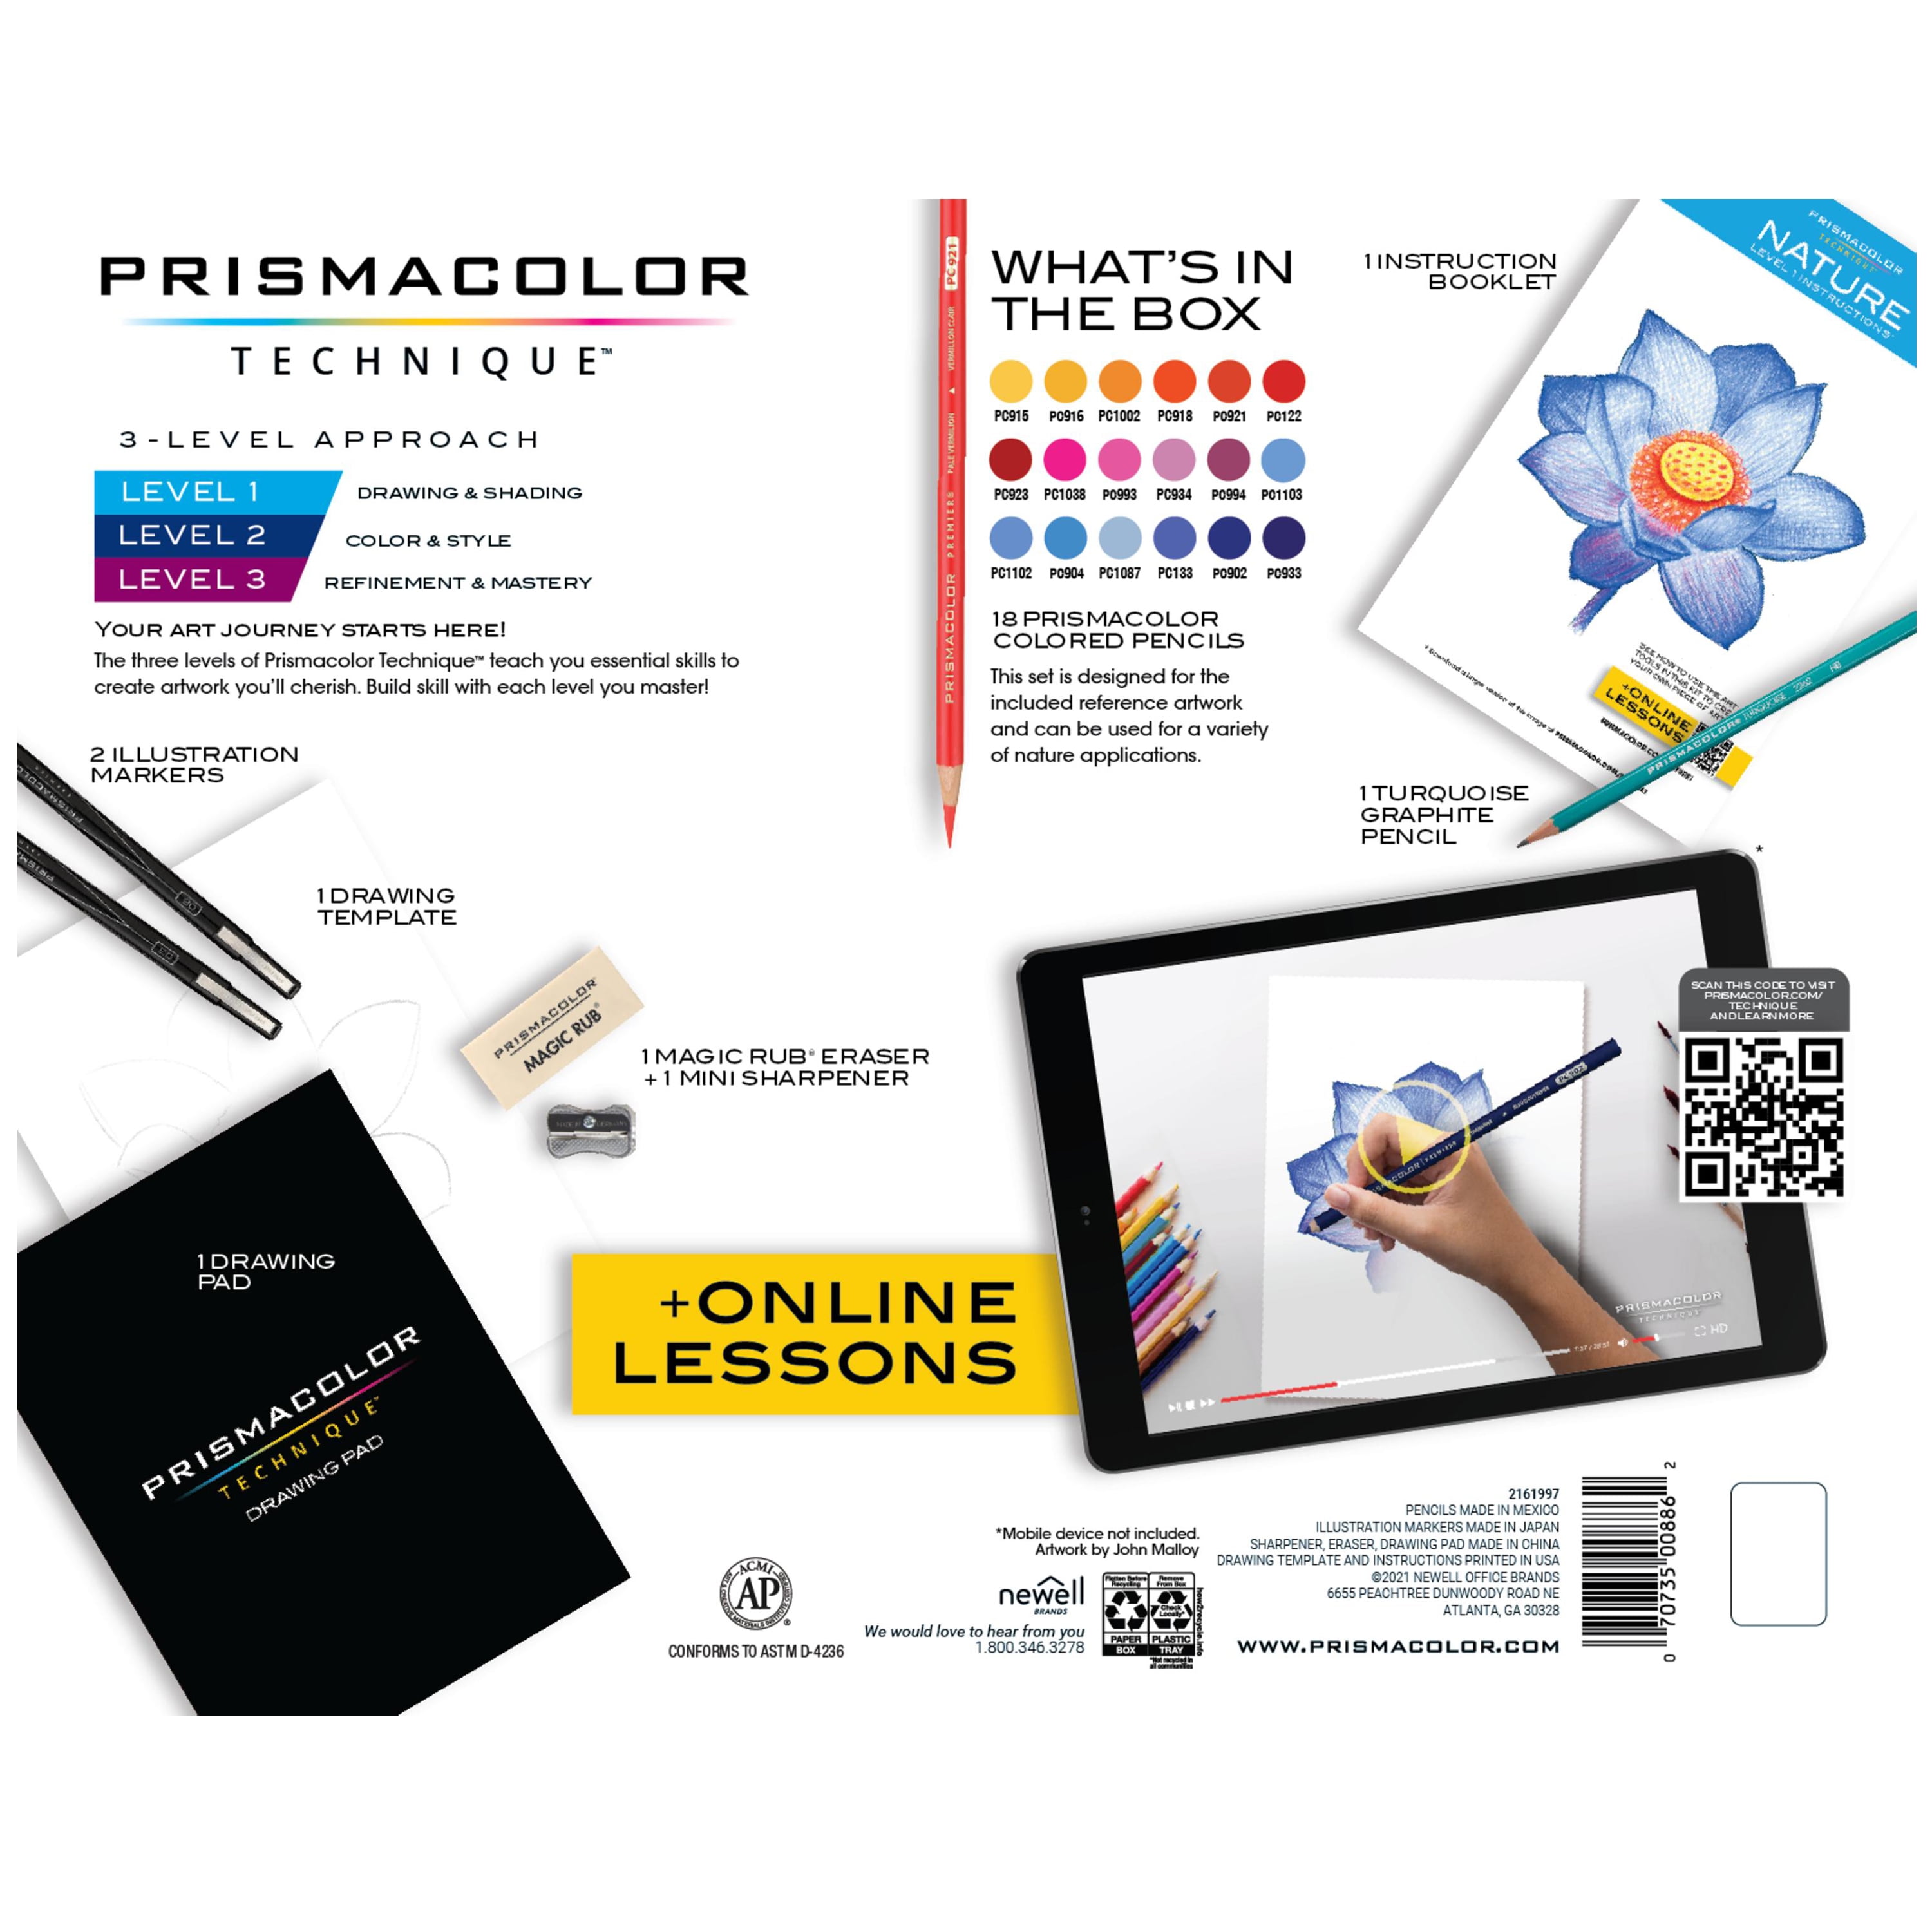 Prismacolor Technique, Art Supplies and Digital Art Lessons, Landscape Drawing Set, 25 Count, Adult